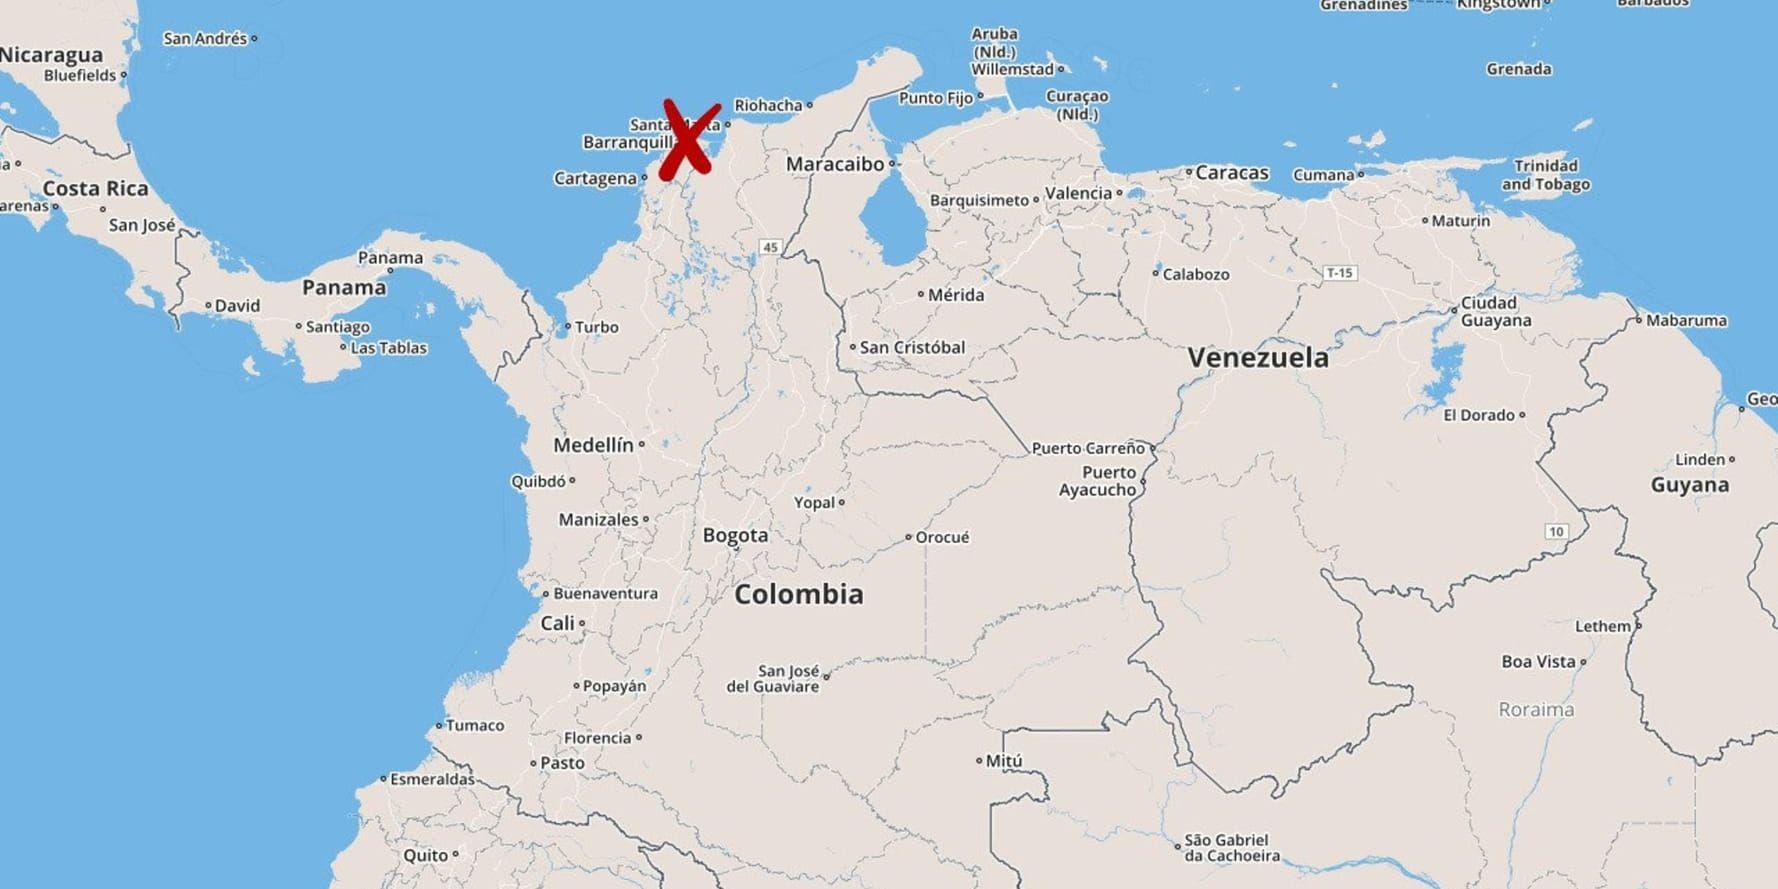 Minst fem poliser dödades när en bomb detonerade på en polisstation i norra Colombia.